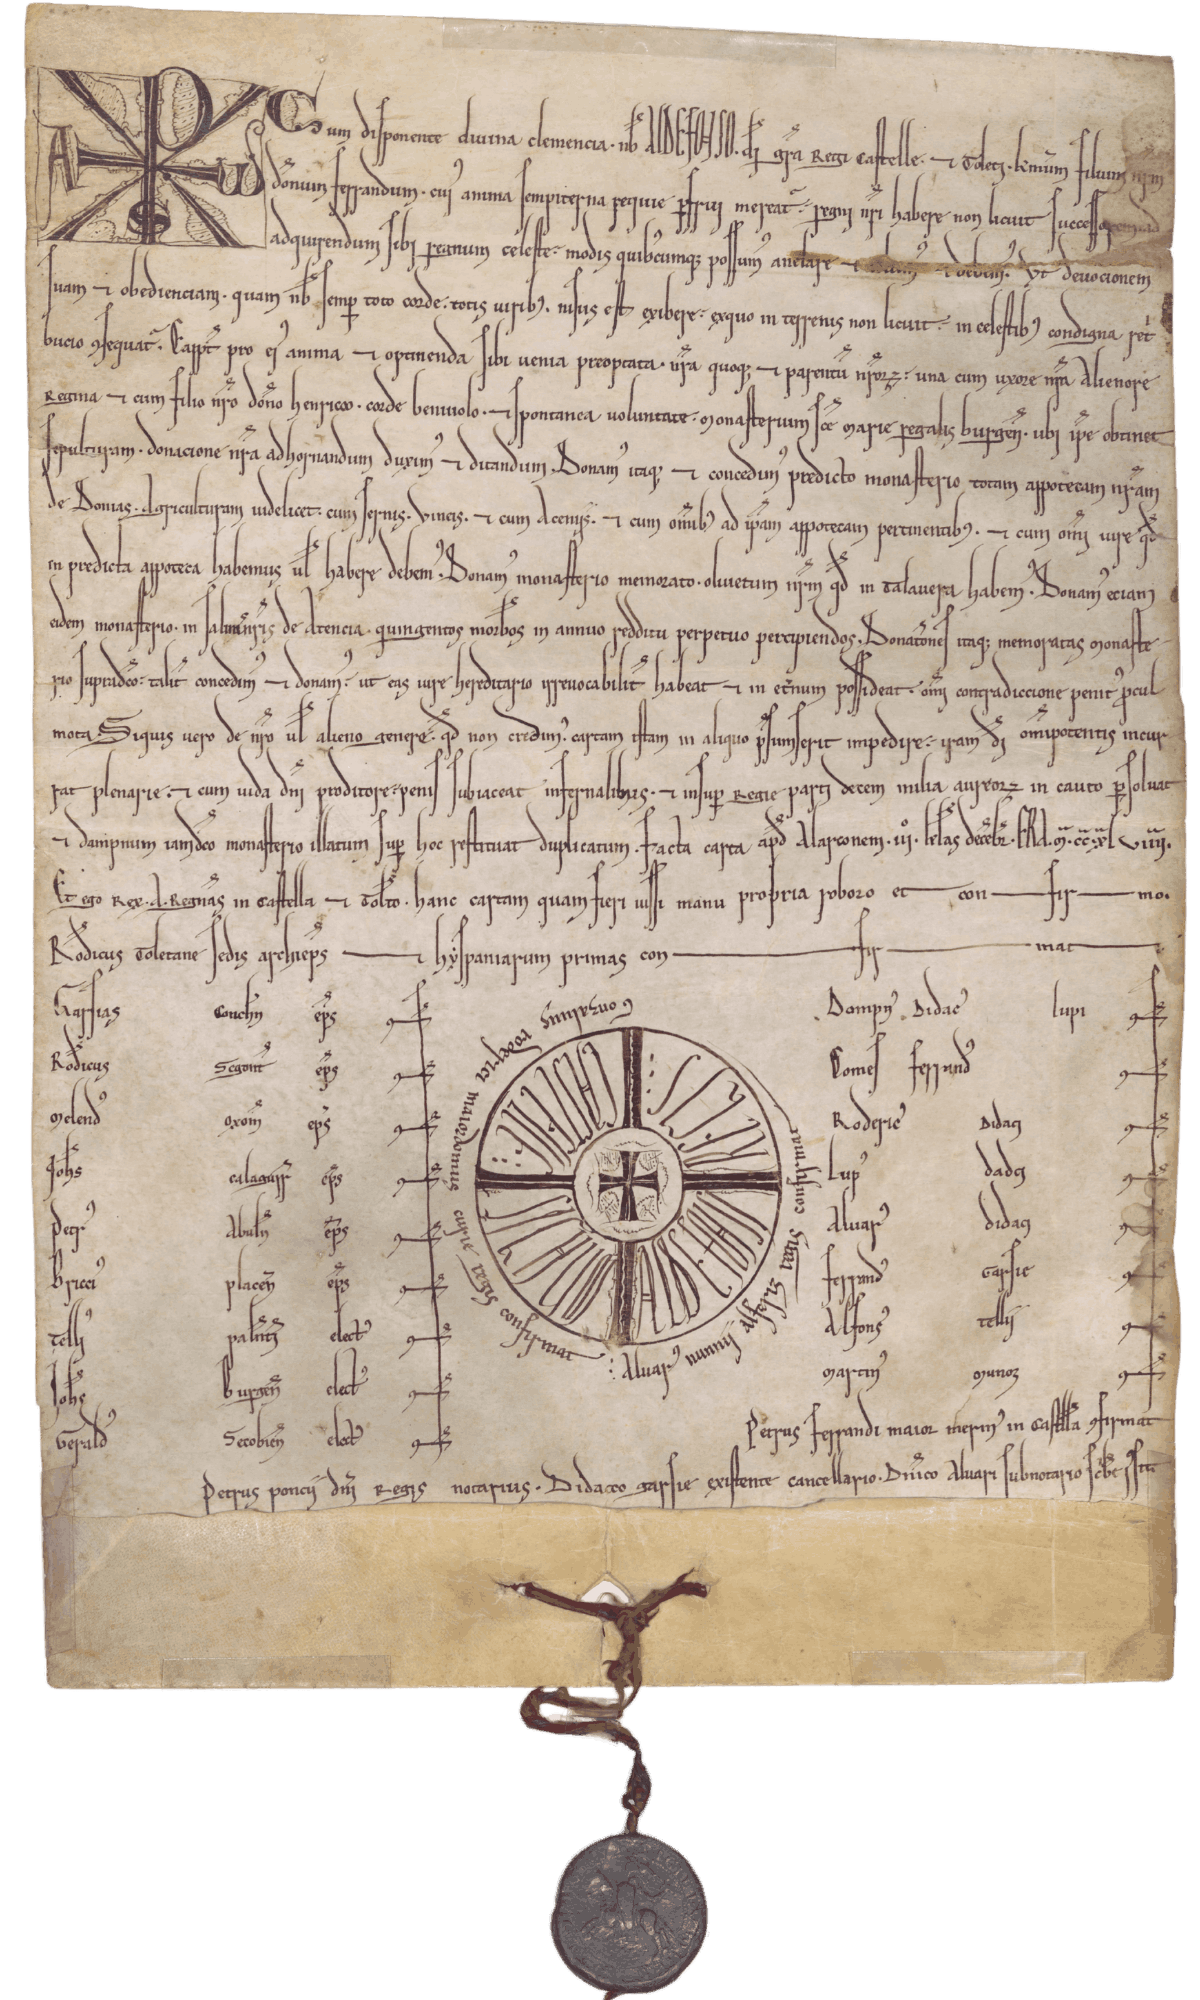 Privilegio rodado de Alfonso VIII. Archives ducales de Medinaceli, Privilegios Rodados, nº6.